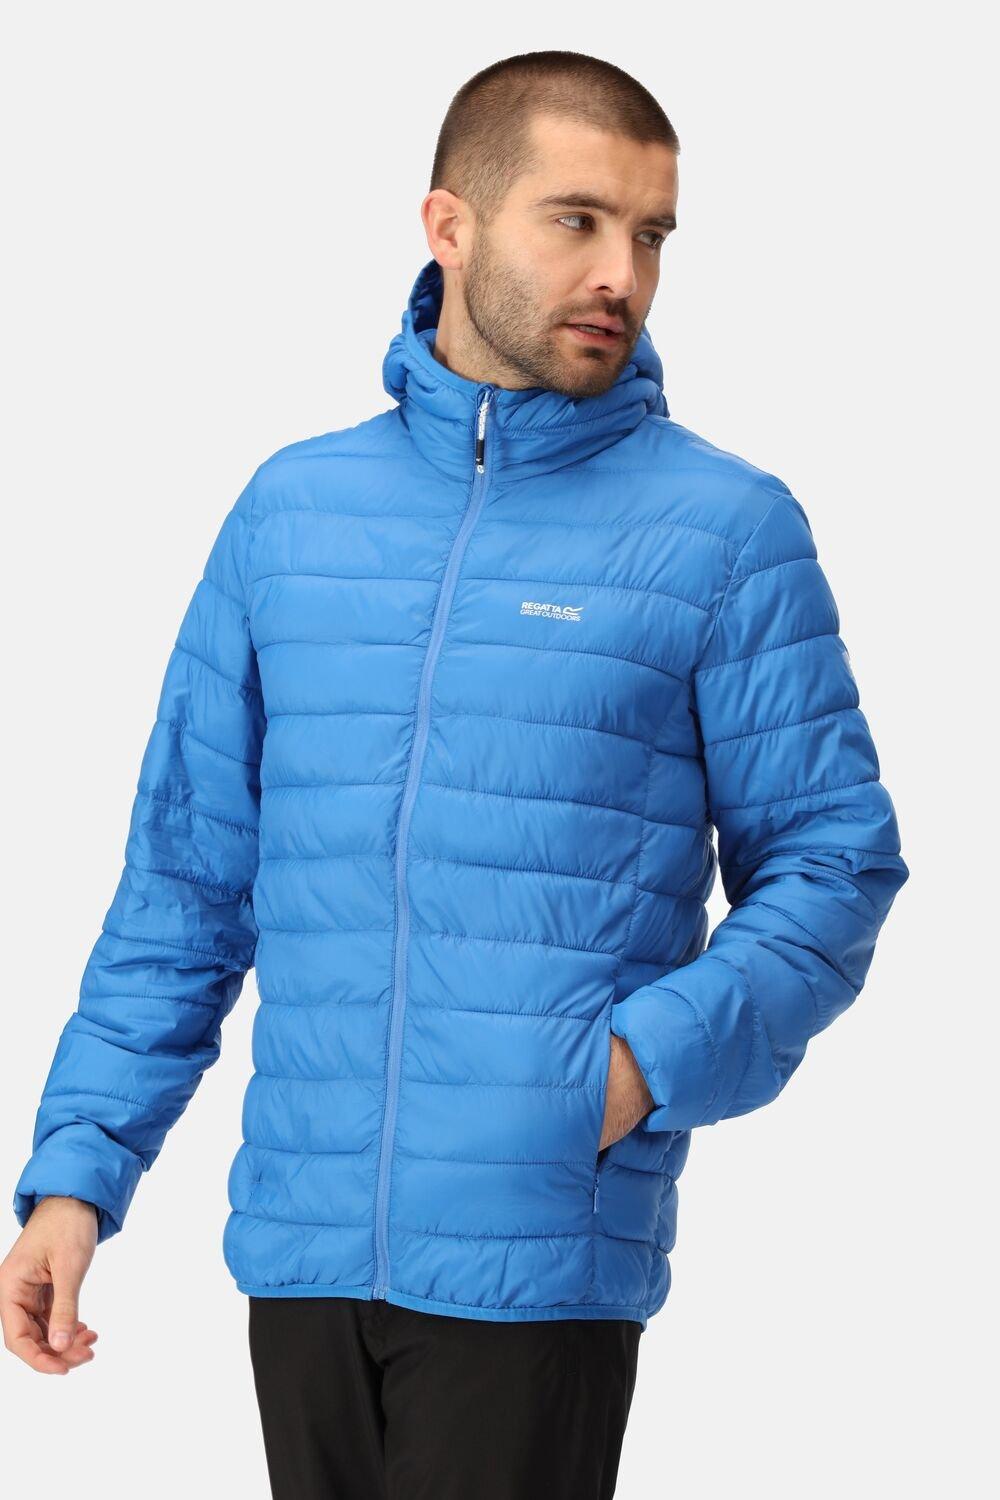 Водоотталкивающая куртка с капюшоном Hillpack Regatta, синий зимняя мужская теплая куртка легкая мужская парка пальто стеганая куртка мужская уличная одежда с капюшоном